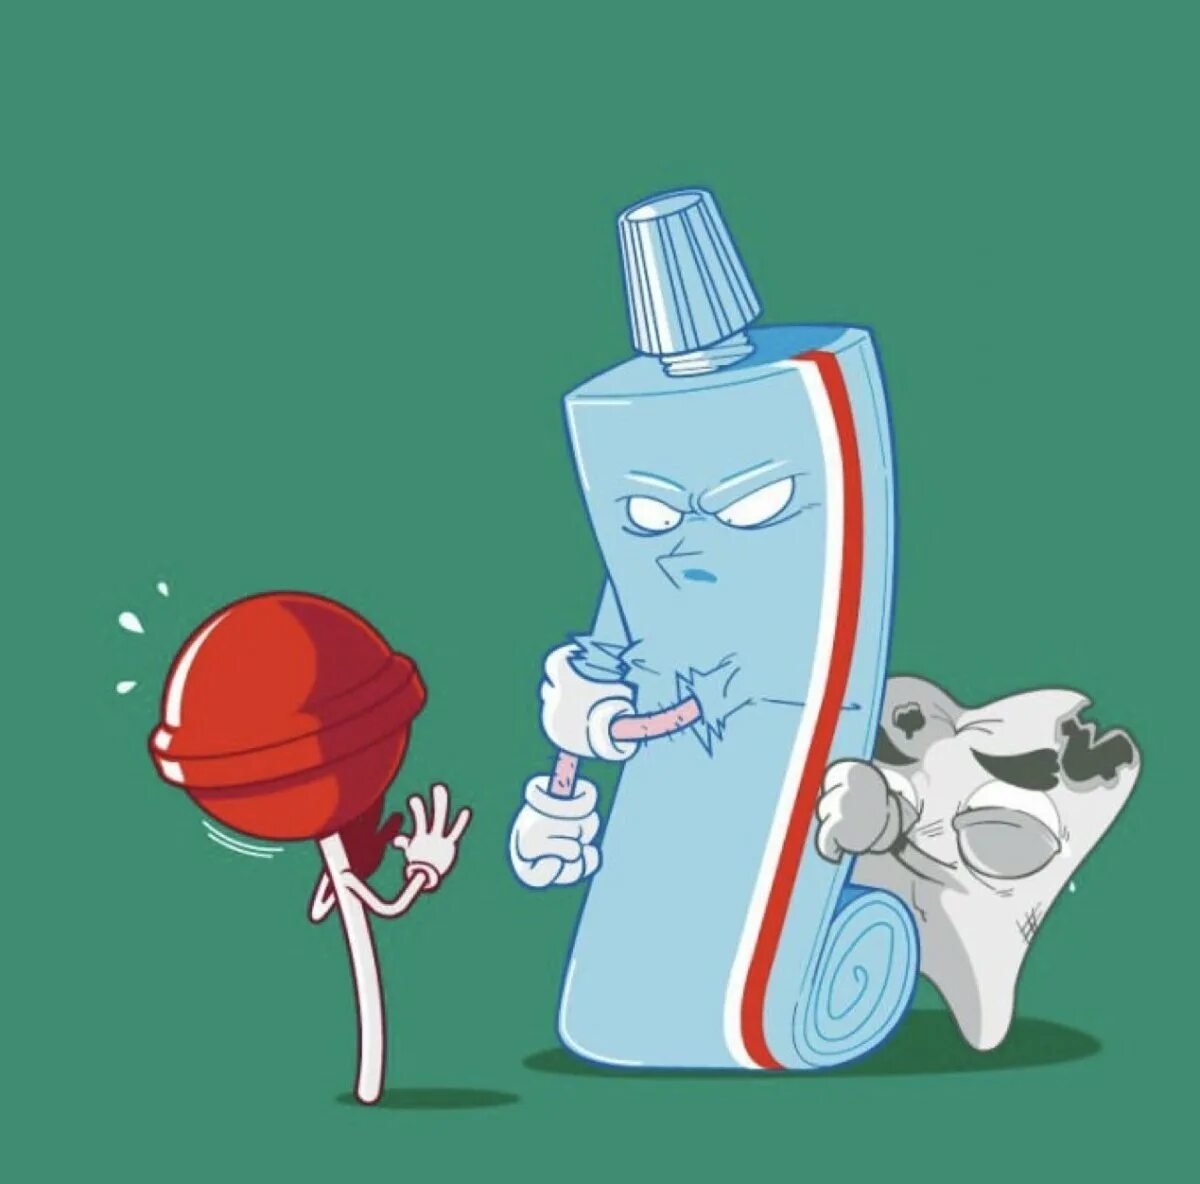 Рекламный плакат зубной пасты. Креативная реклама зубной пасты. Необычная реклама зубной пасты. Зубная паста юмор. Веселые рекламы для детей